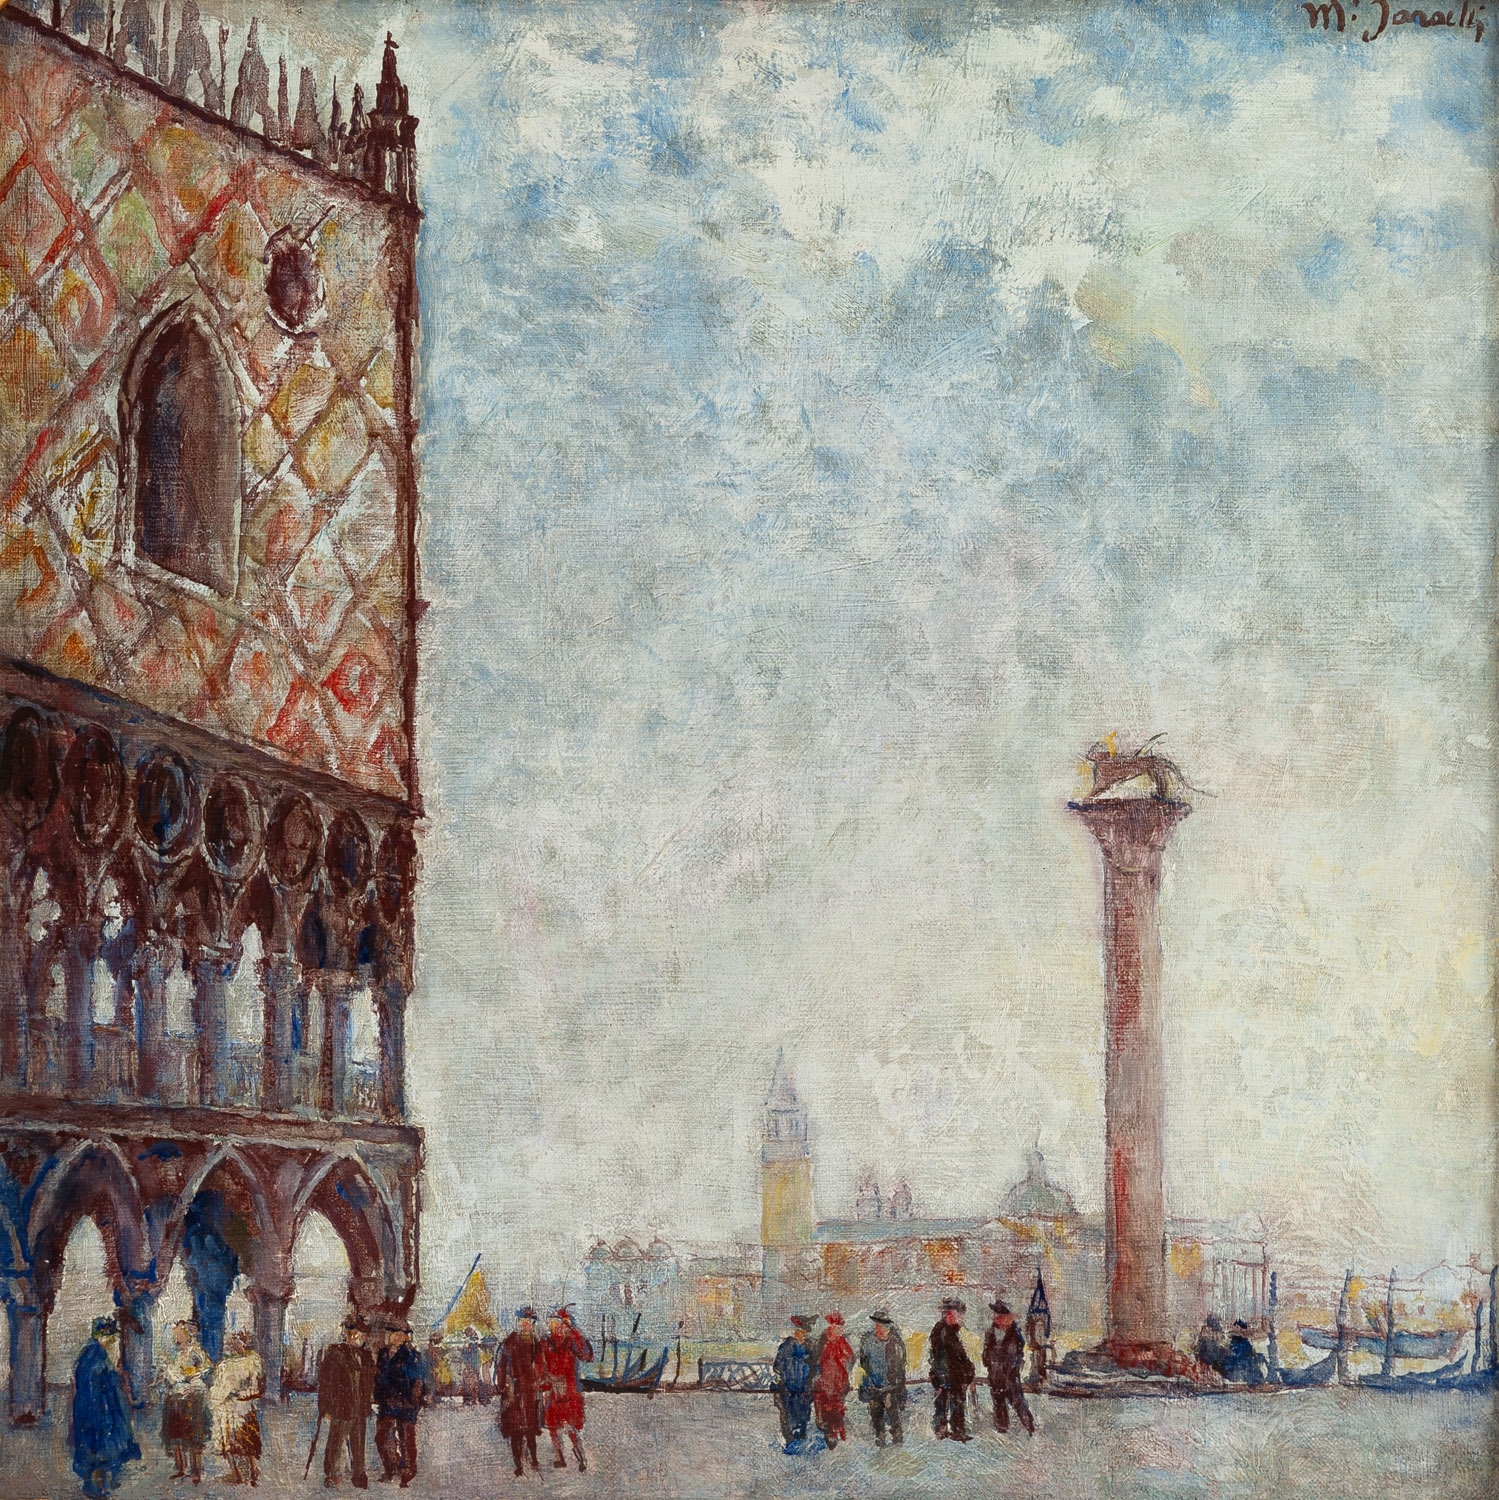 View from Piazzetta San Marco in Venice - Władysław Jarocki